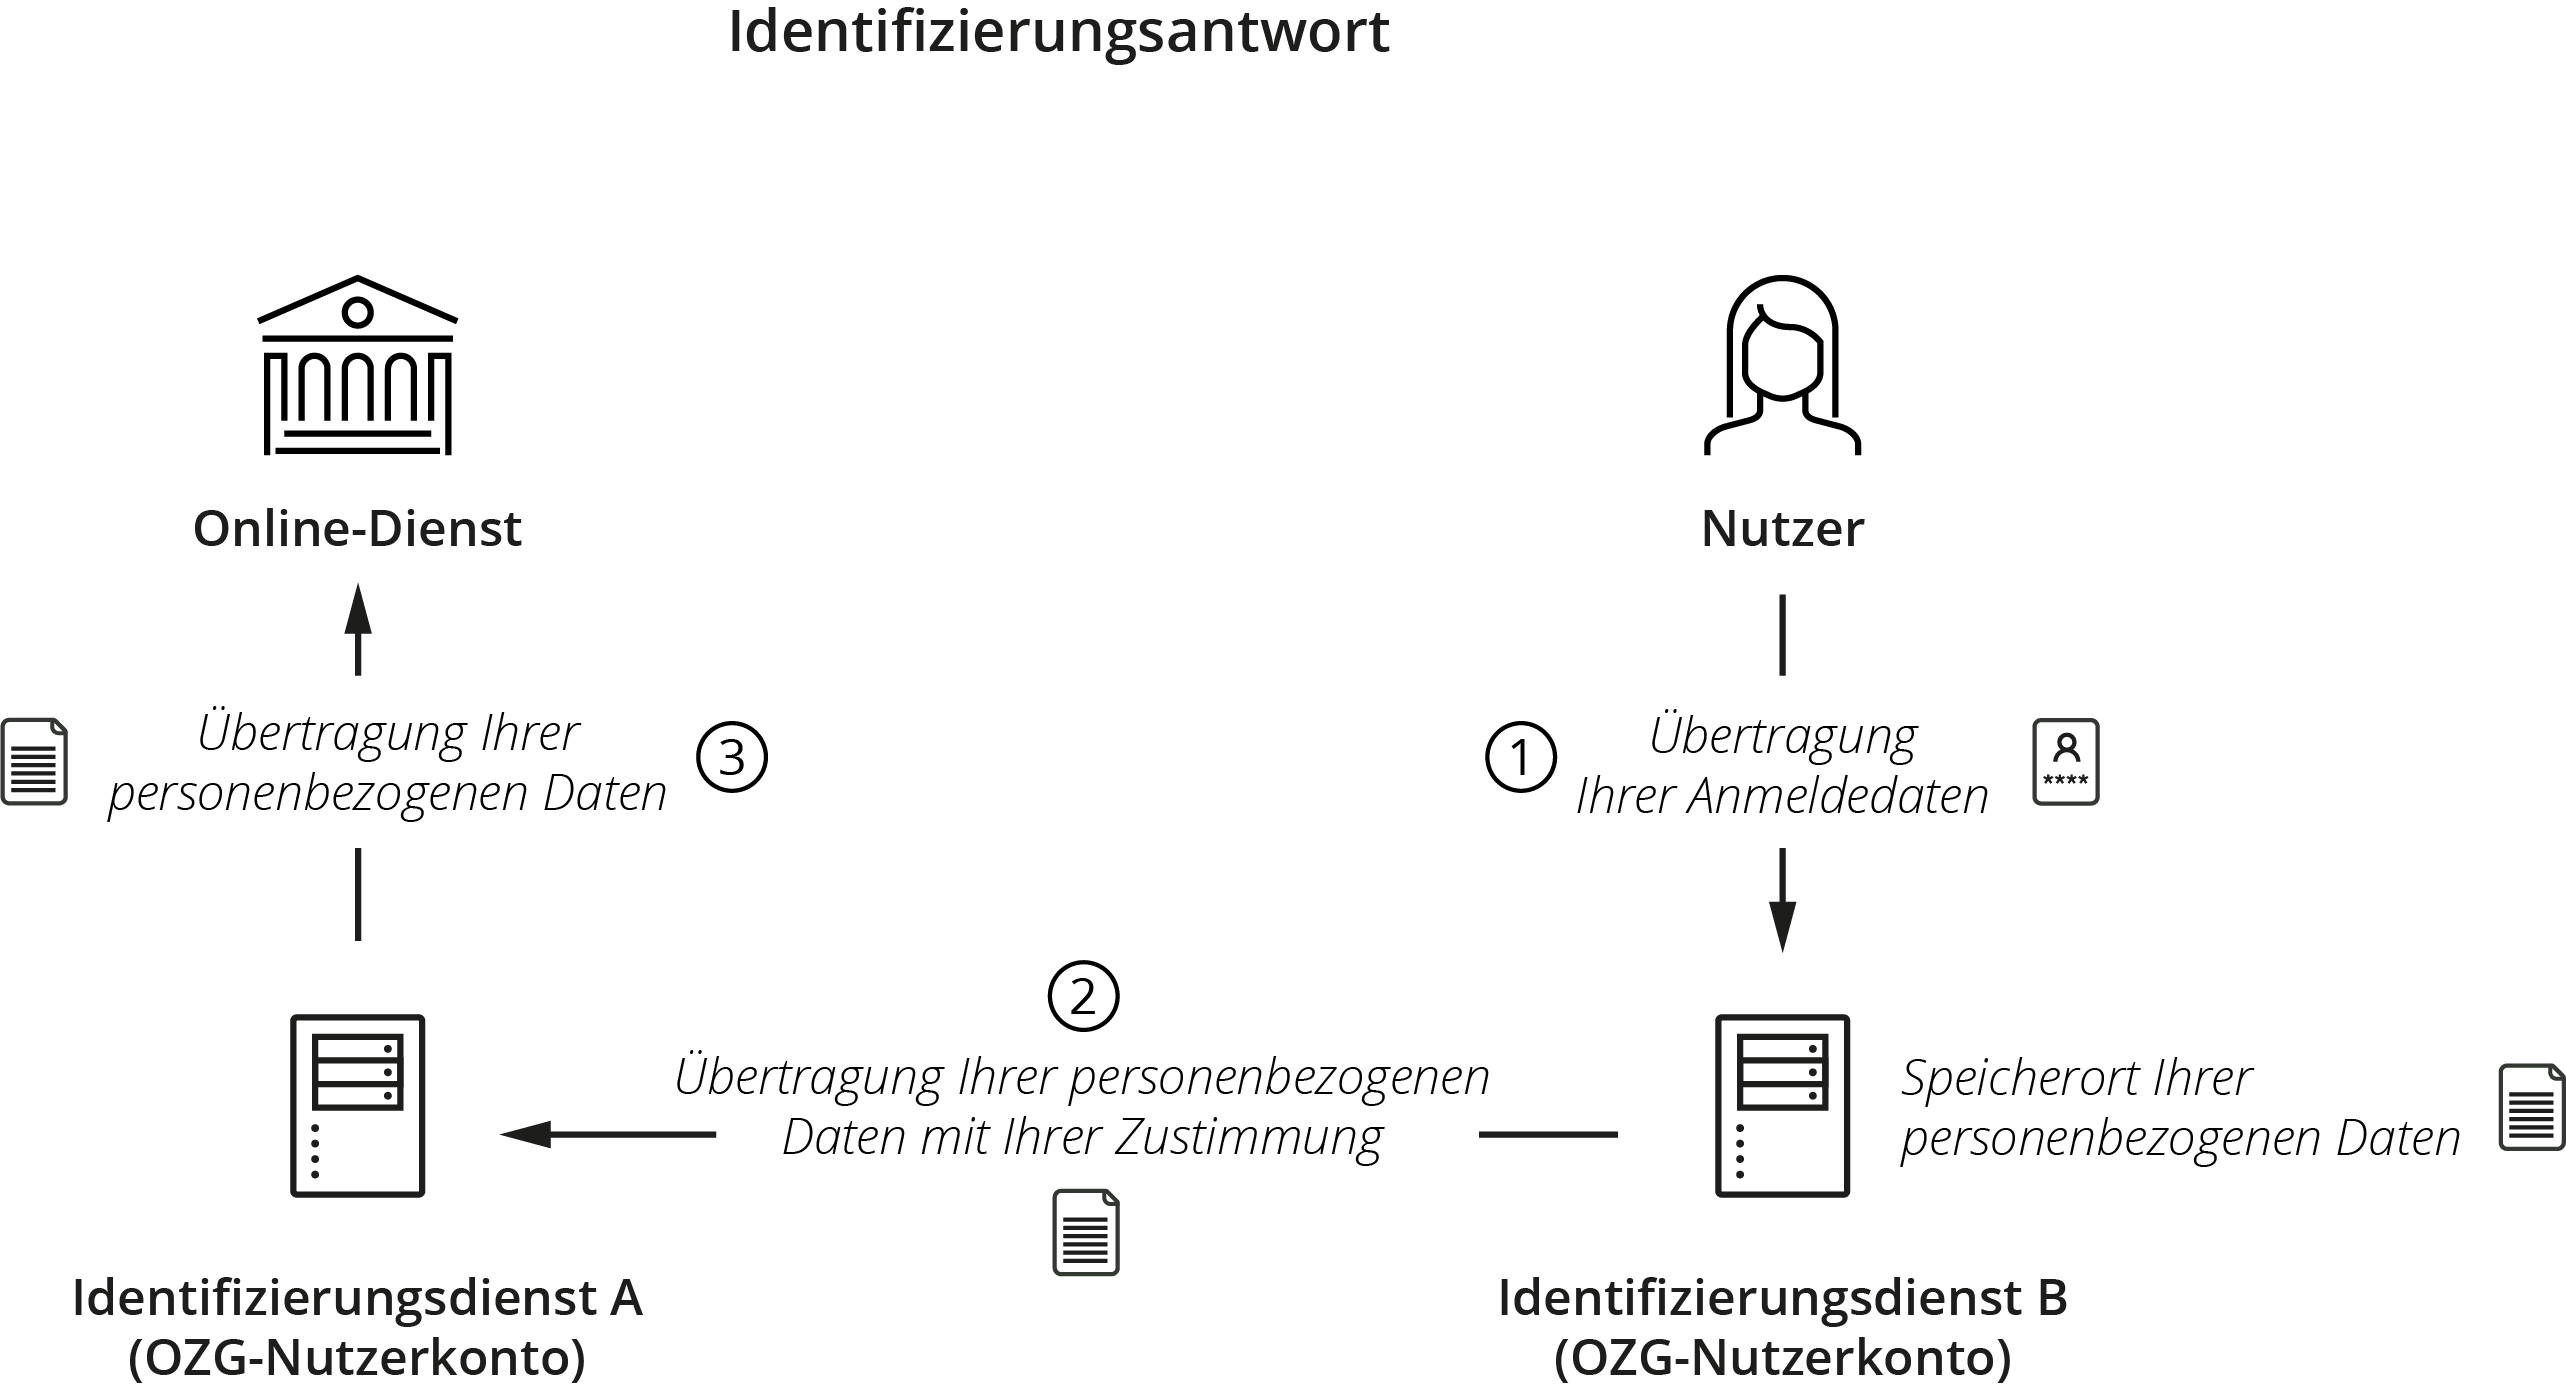 Grafische Darstellung der durch die Identifizierungsantwort übertragenen Daten vom Nutzer über die beiden Identifizierungsdienste zum Online-Dienst